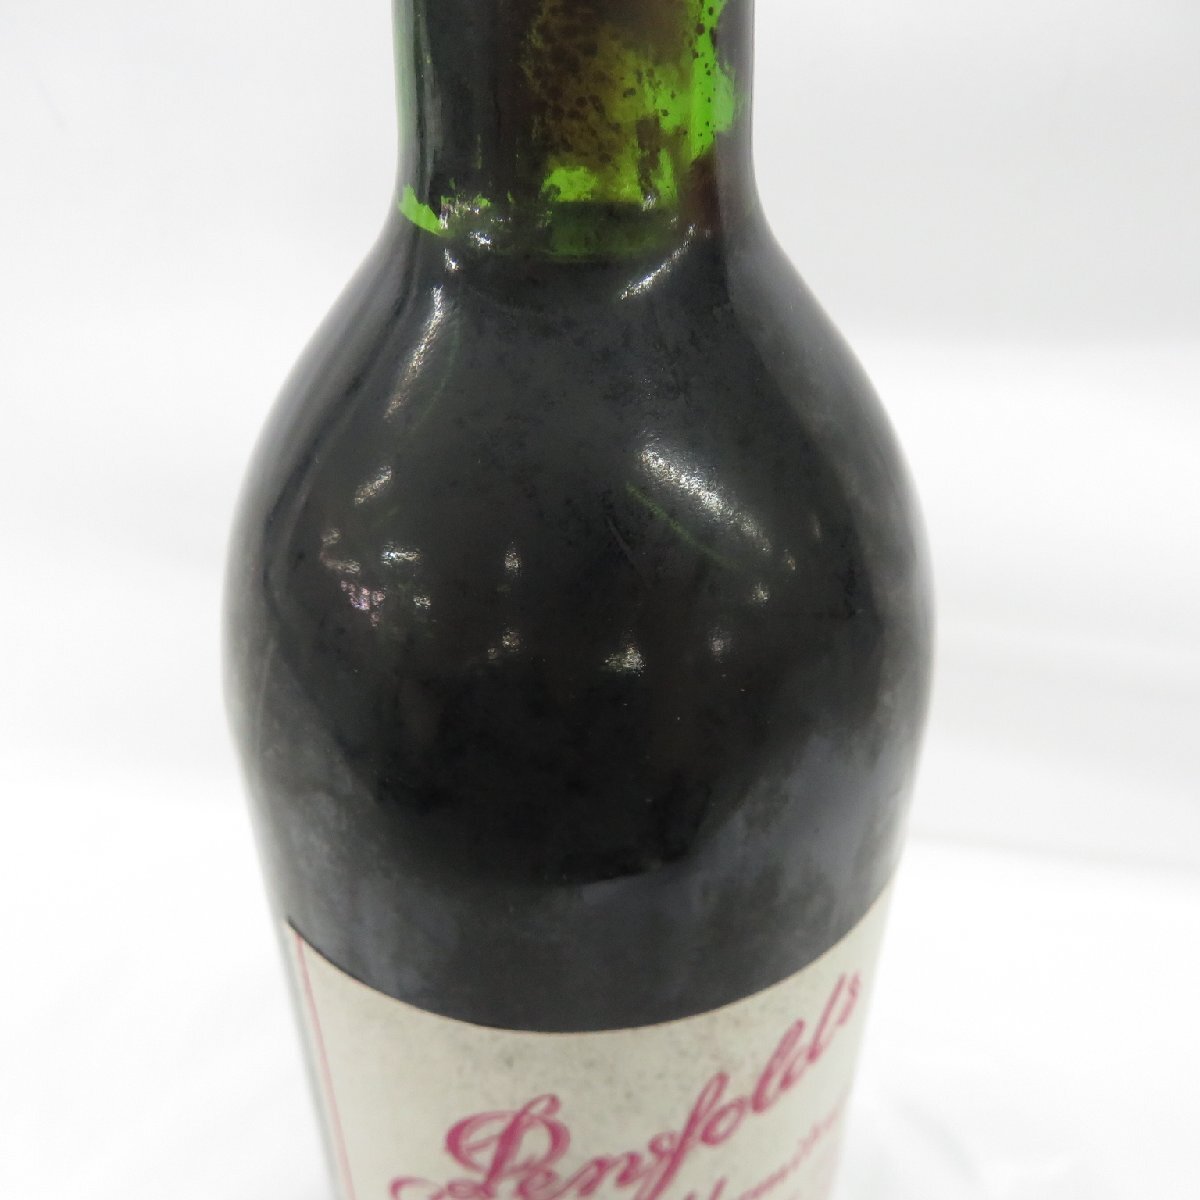 [ не . штекер ]Penfolds авторучка four ruz gran ji - -mite-jiBIN95 1979 1981 бутылка in красный вино 750ml 12.9% 11567753 0519